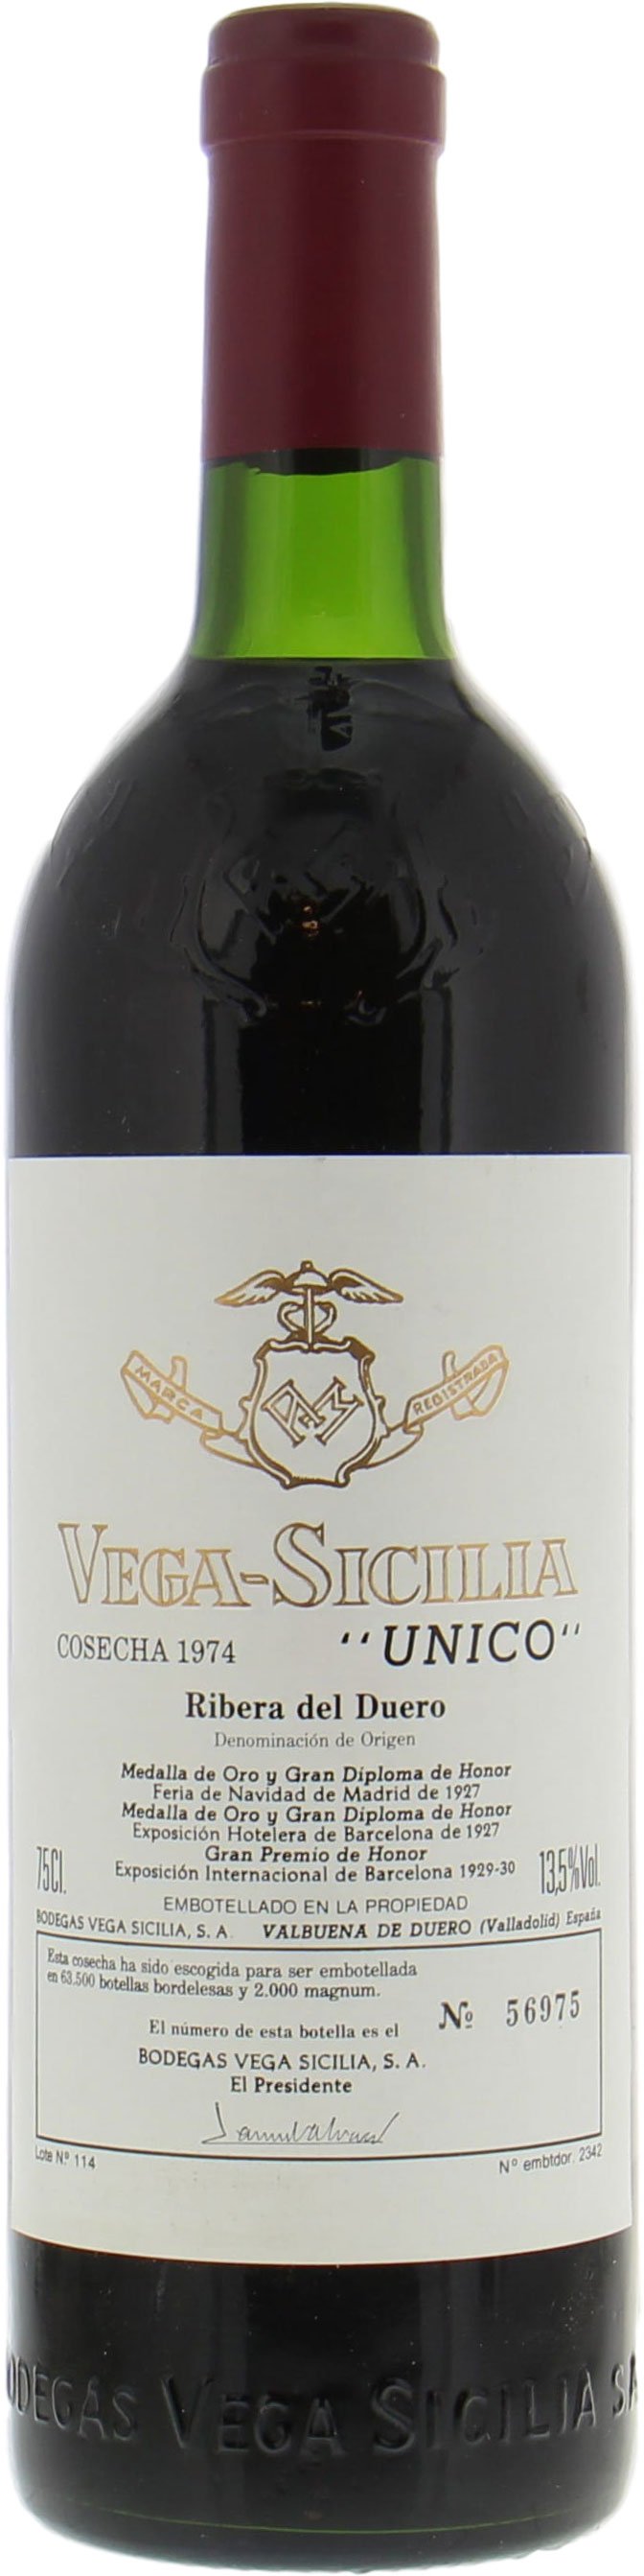 Vega Sicilia - Unico 1974 Perfect